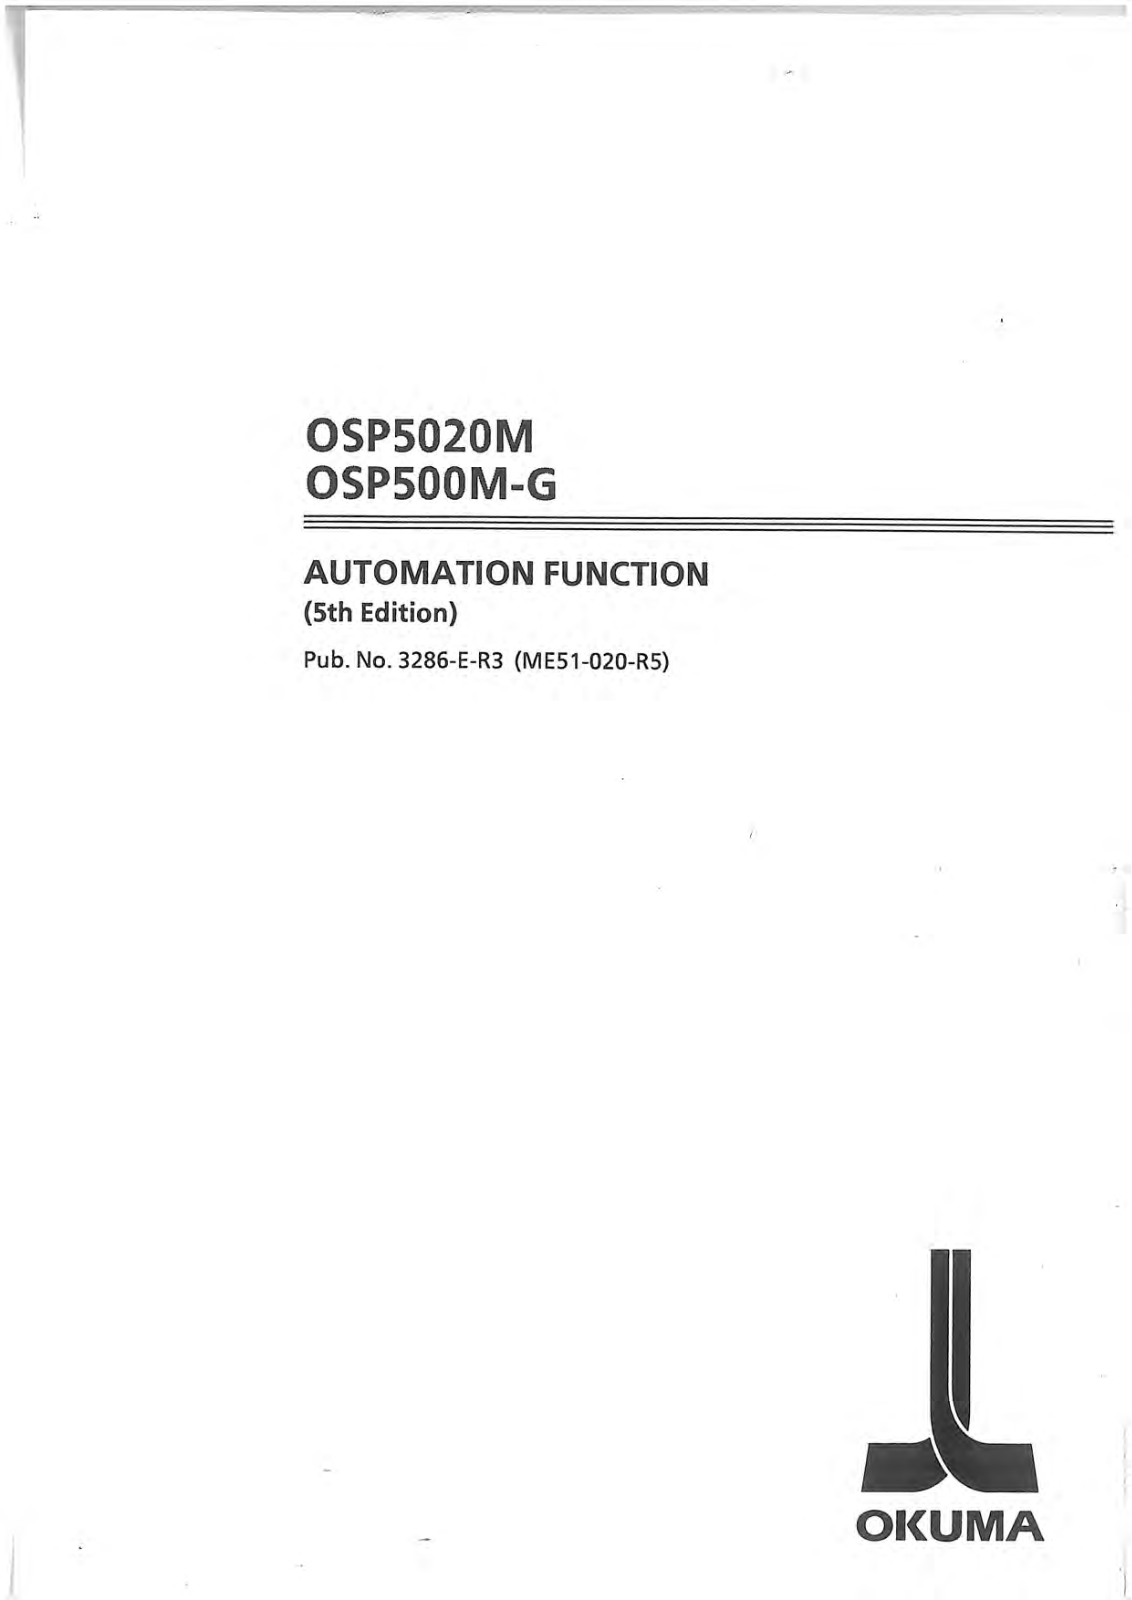 okuma OSP5020M, OSP500M-G User Manual